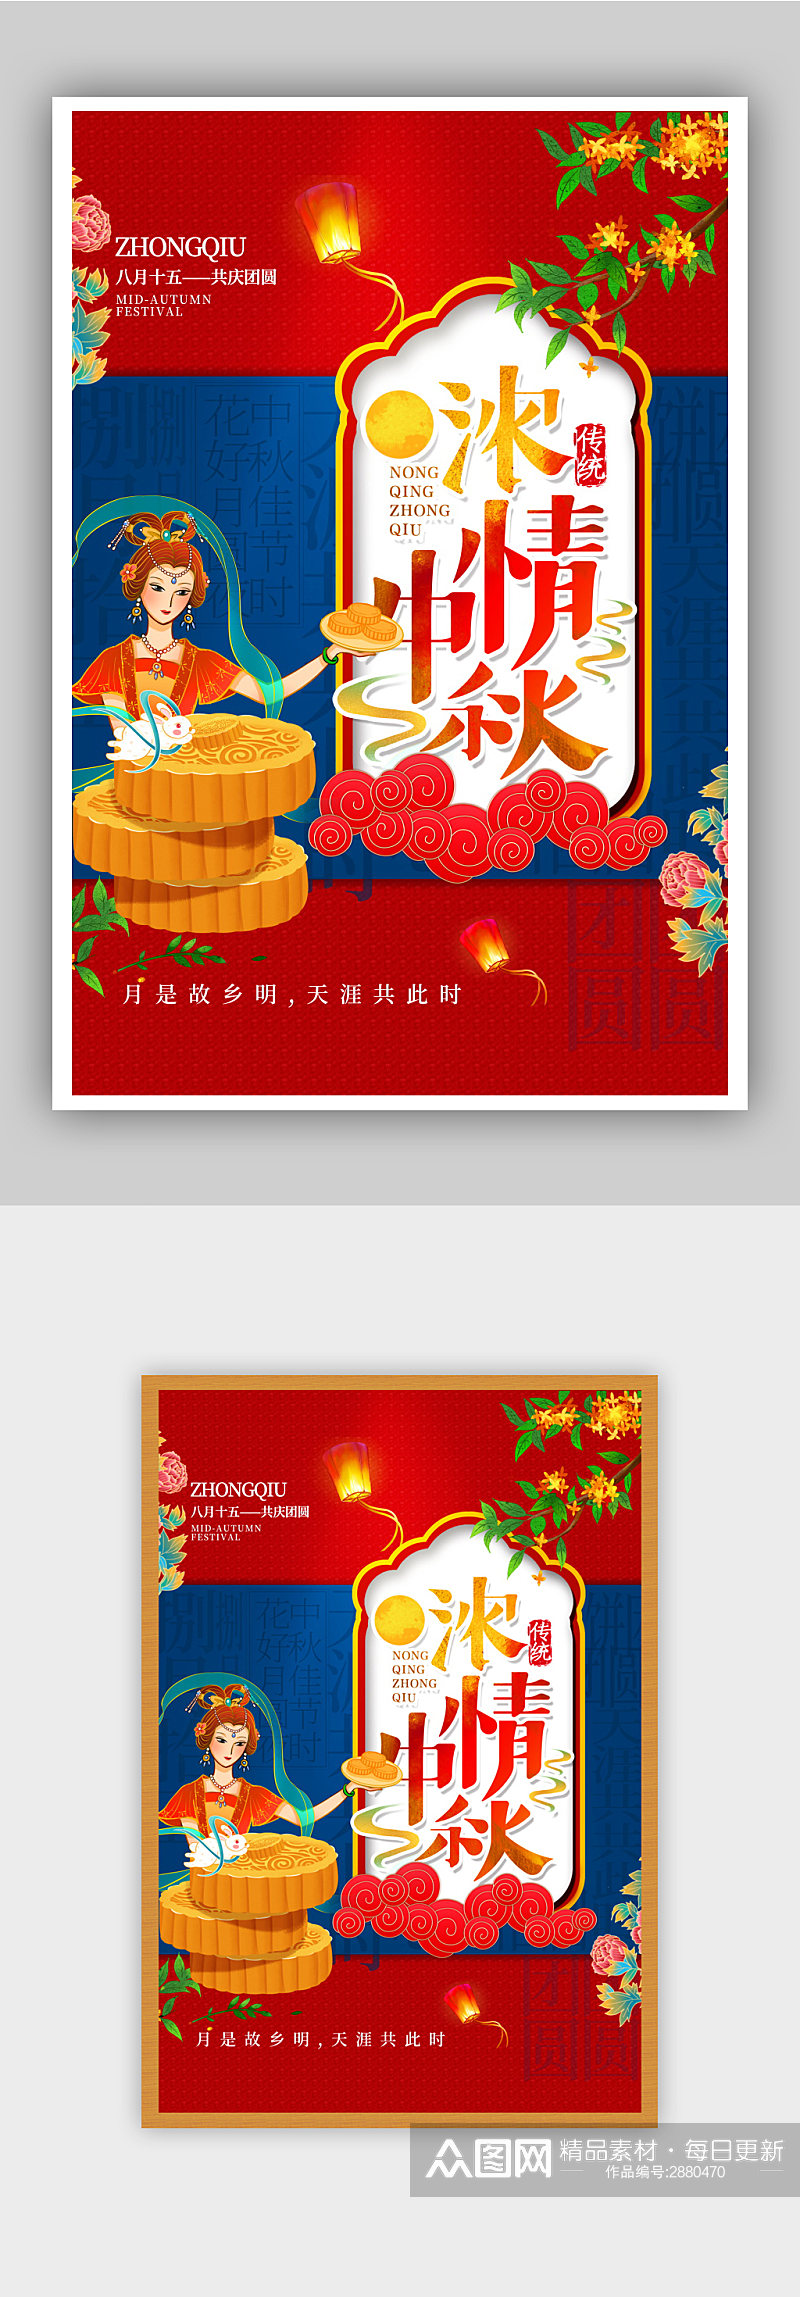 红蓝撞色创意中秋节海报素材